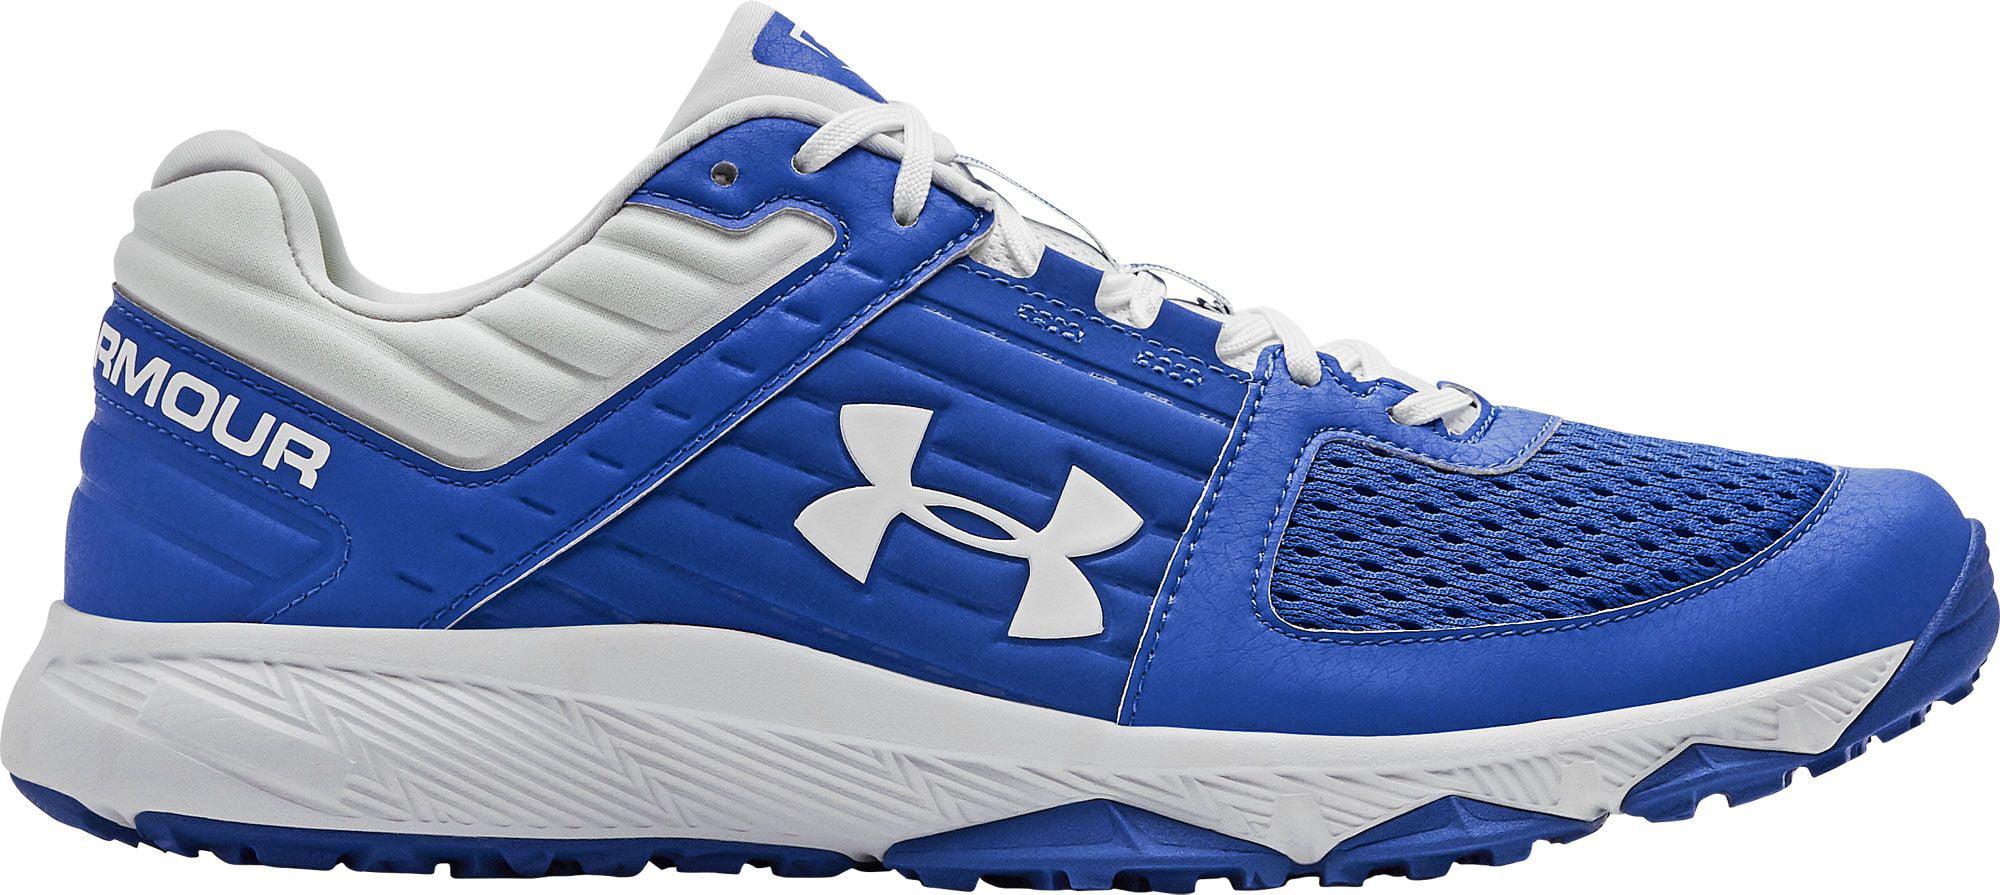 royal blue baseball turf shoes